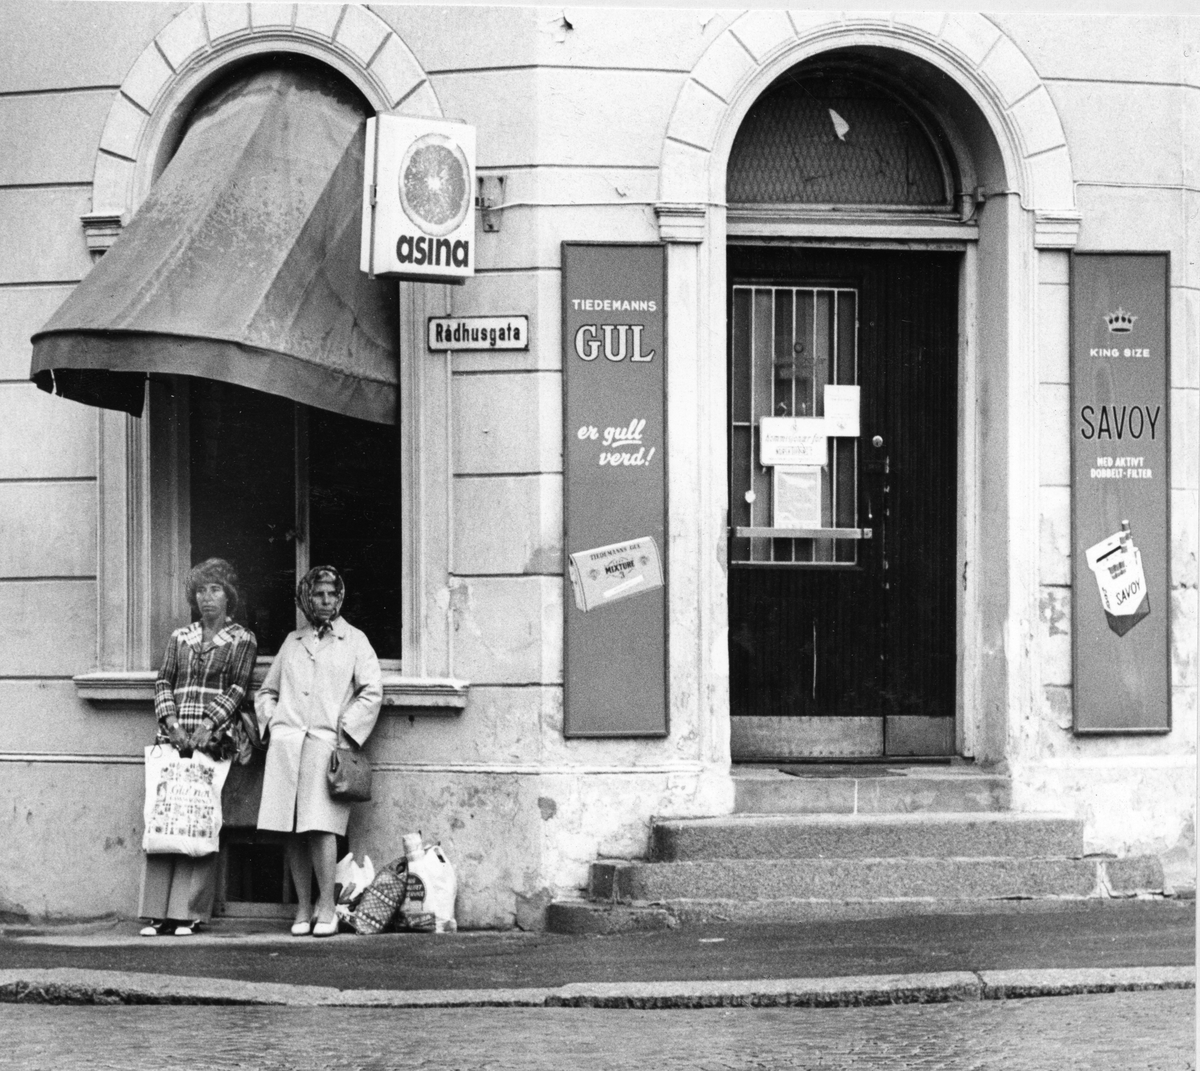 Gatebilde. To damer foran husvegg. Kiosk på hjørnet av en bygård. Reklameskilt for Tiedemanns Gul og Savoy sigaretter.